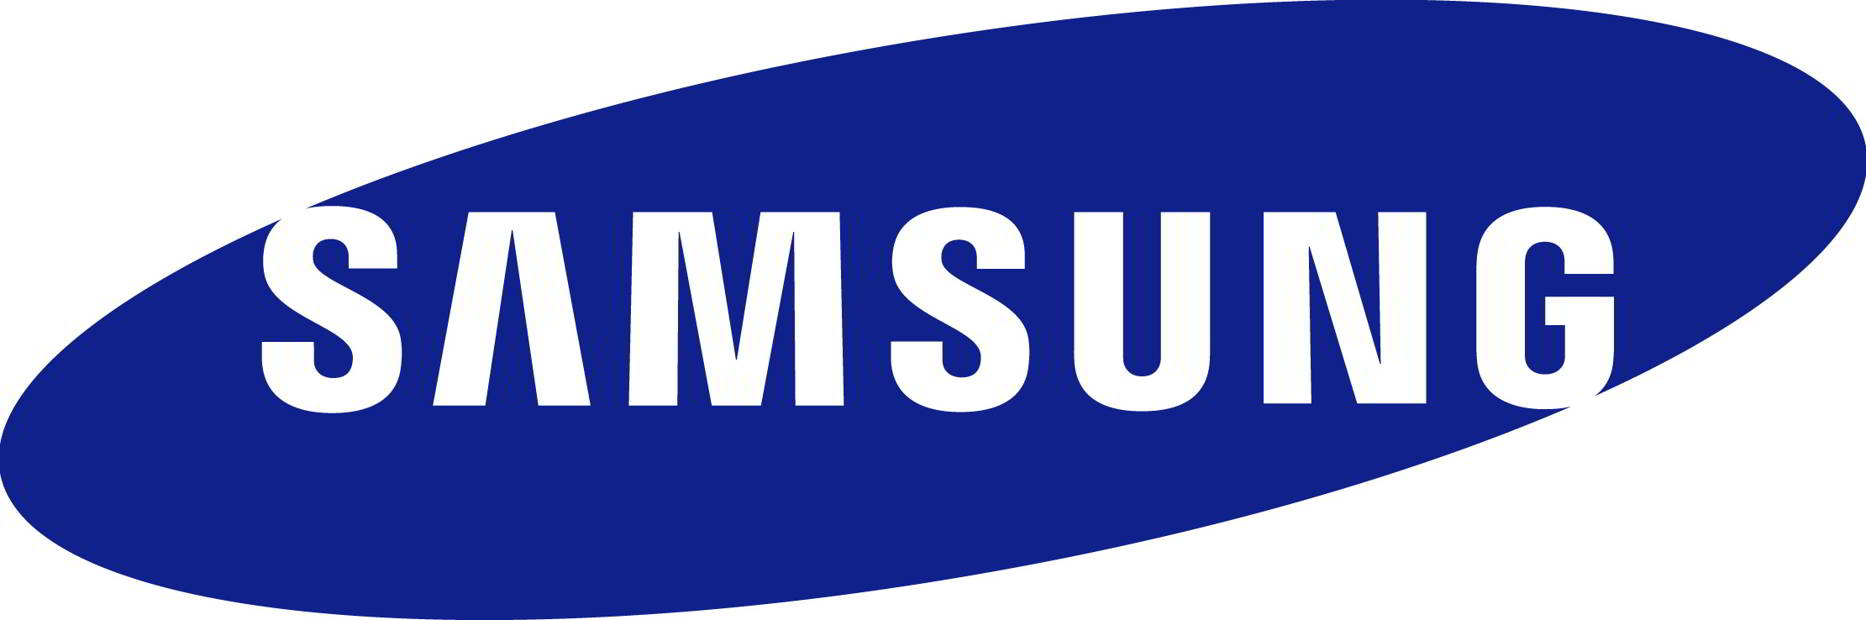 chiffre d'affaires Samsung T4 2015